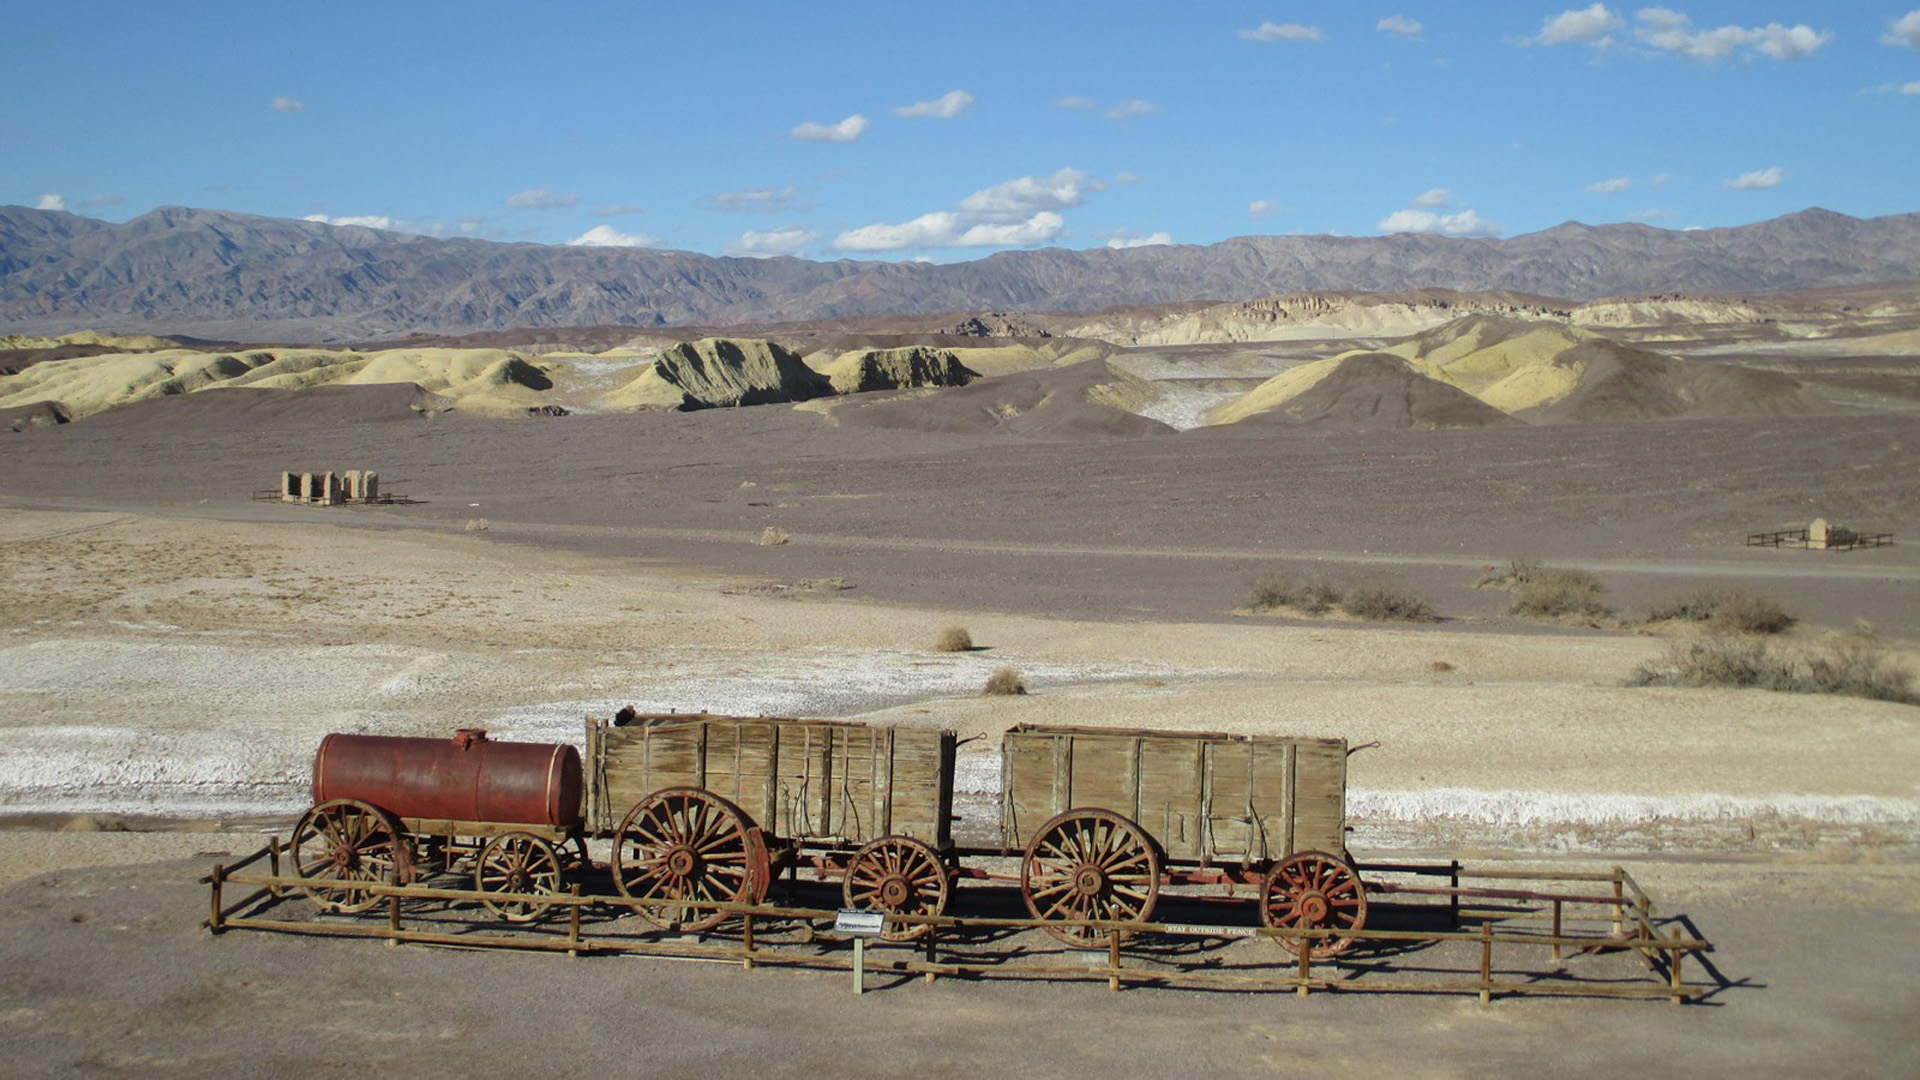 미국 국립공원 완전정복 유튜브 제20편: 매력적인 죽음의 계곡! 캘리포니아 데스밸리(Death Valley) 국립공원